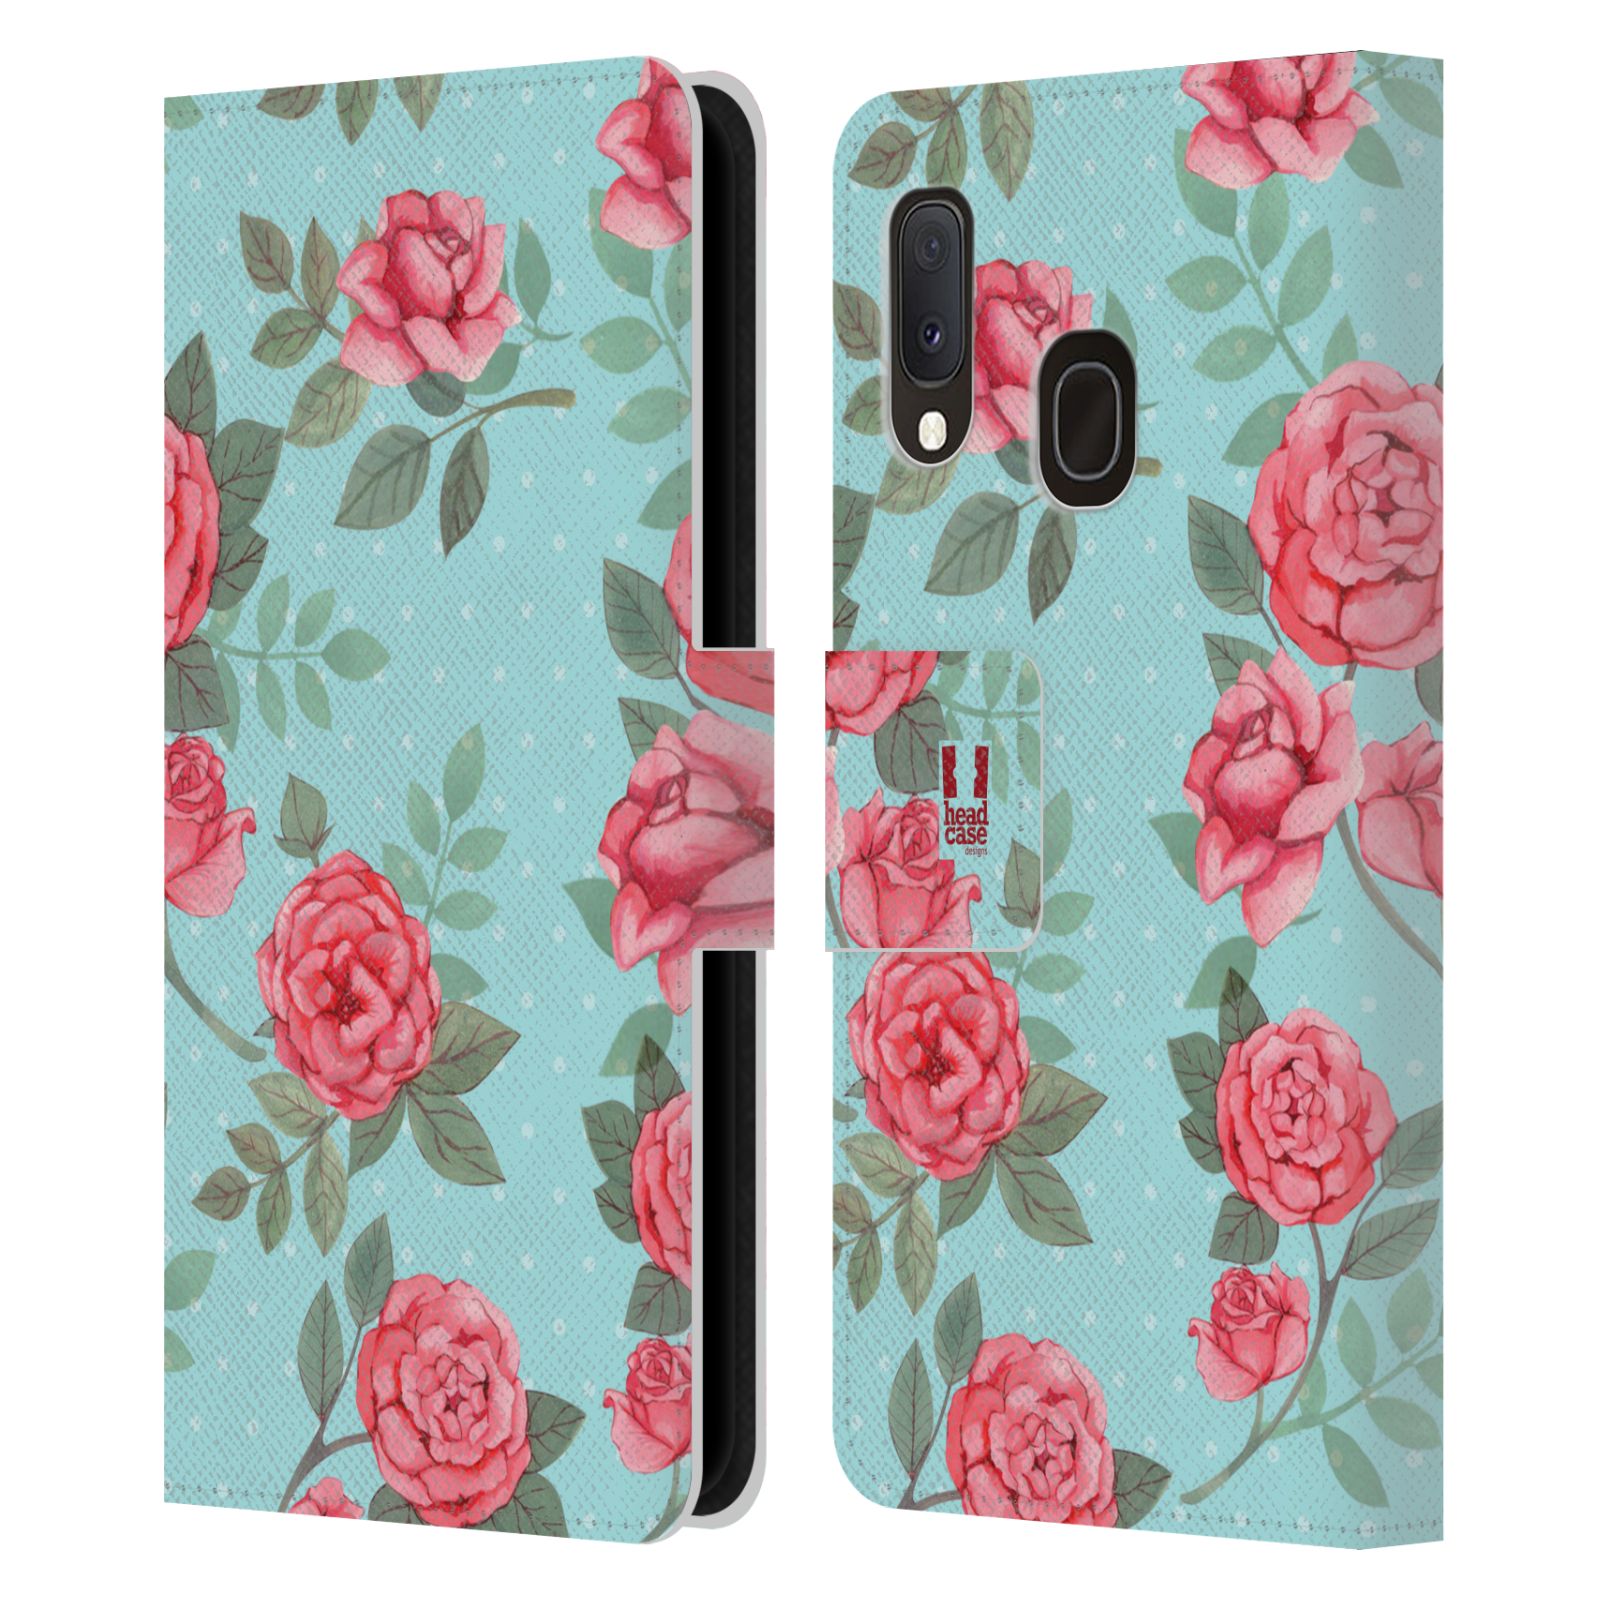 Pouzdro na mobil Samsung Galaxy A20e romantické květy velké růže modrá a růžová